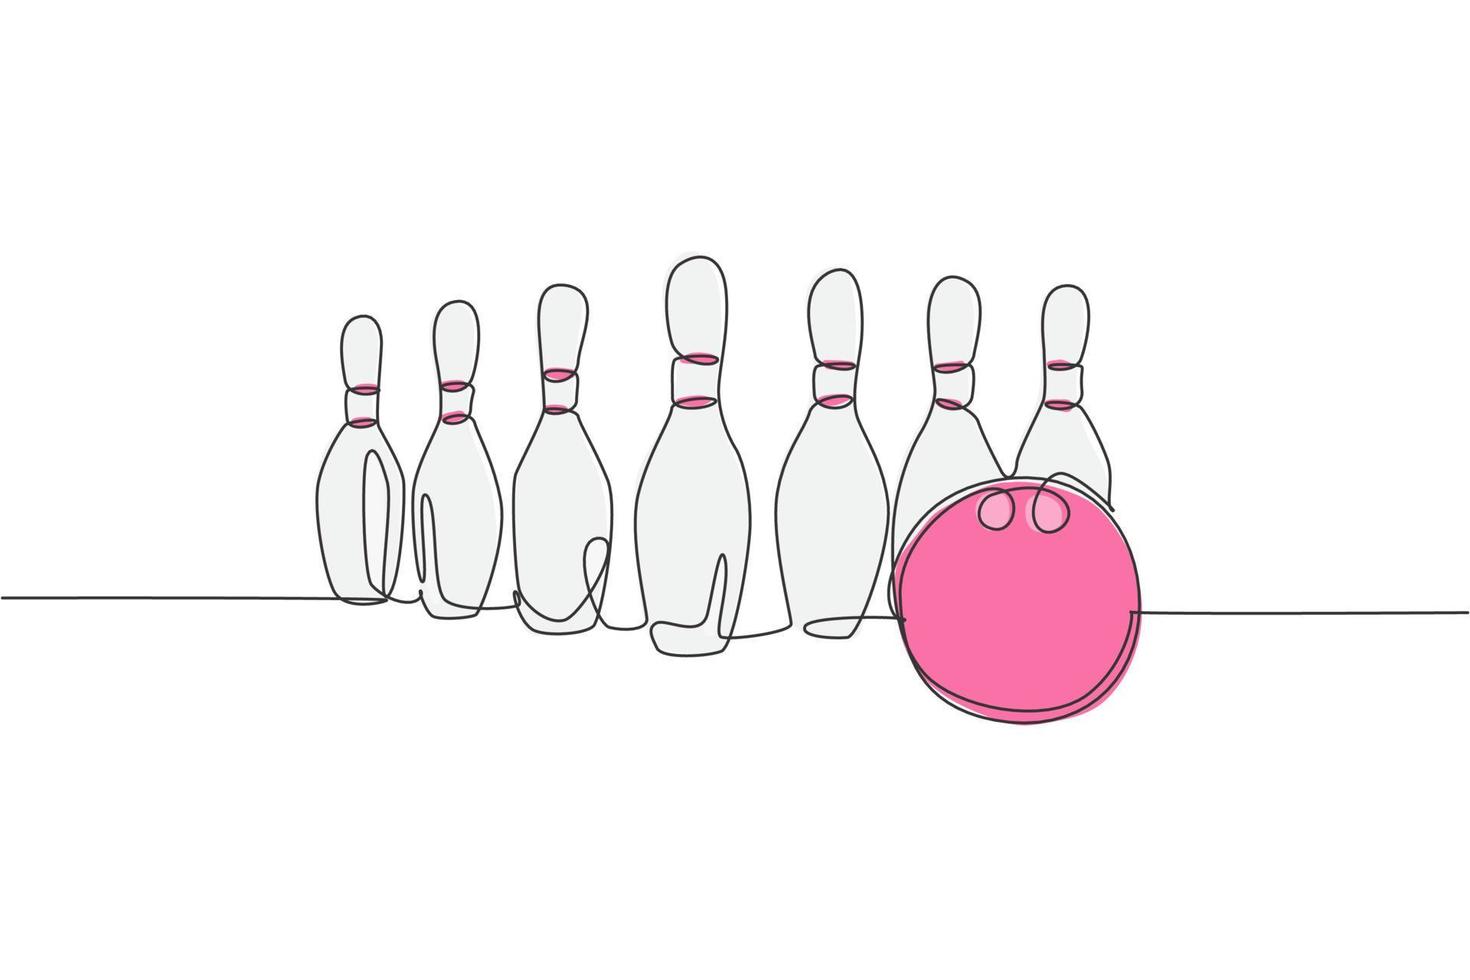 enkele doorlopende lijntekening bowlingpinnen opgesteld op bowlingbaan. sport hobby doen in vrije tijd concept. trendy één lijn tekenen ontwerp vector illustratie afbeelding